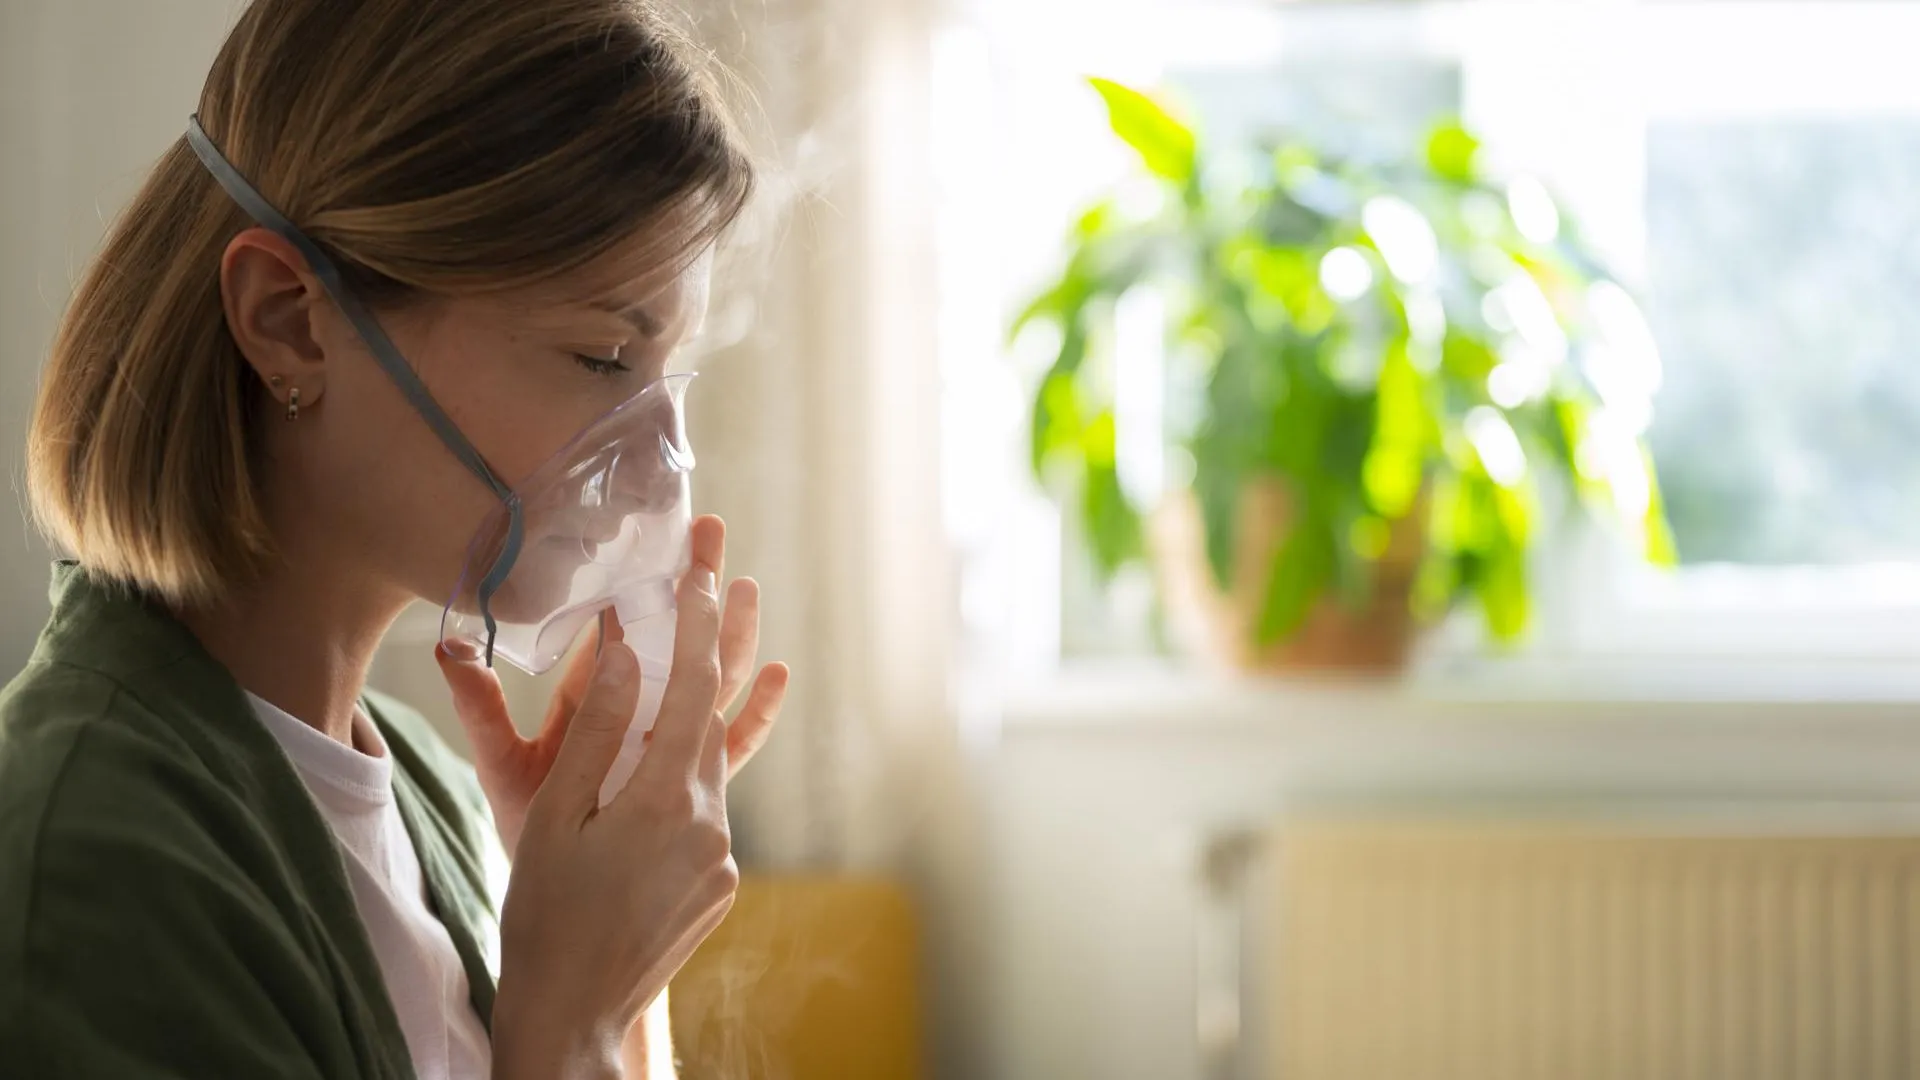 Врач Казеннов: болеющие астмой должны избегать пыли, животной шерсти и парфюма